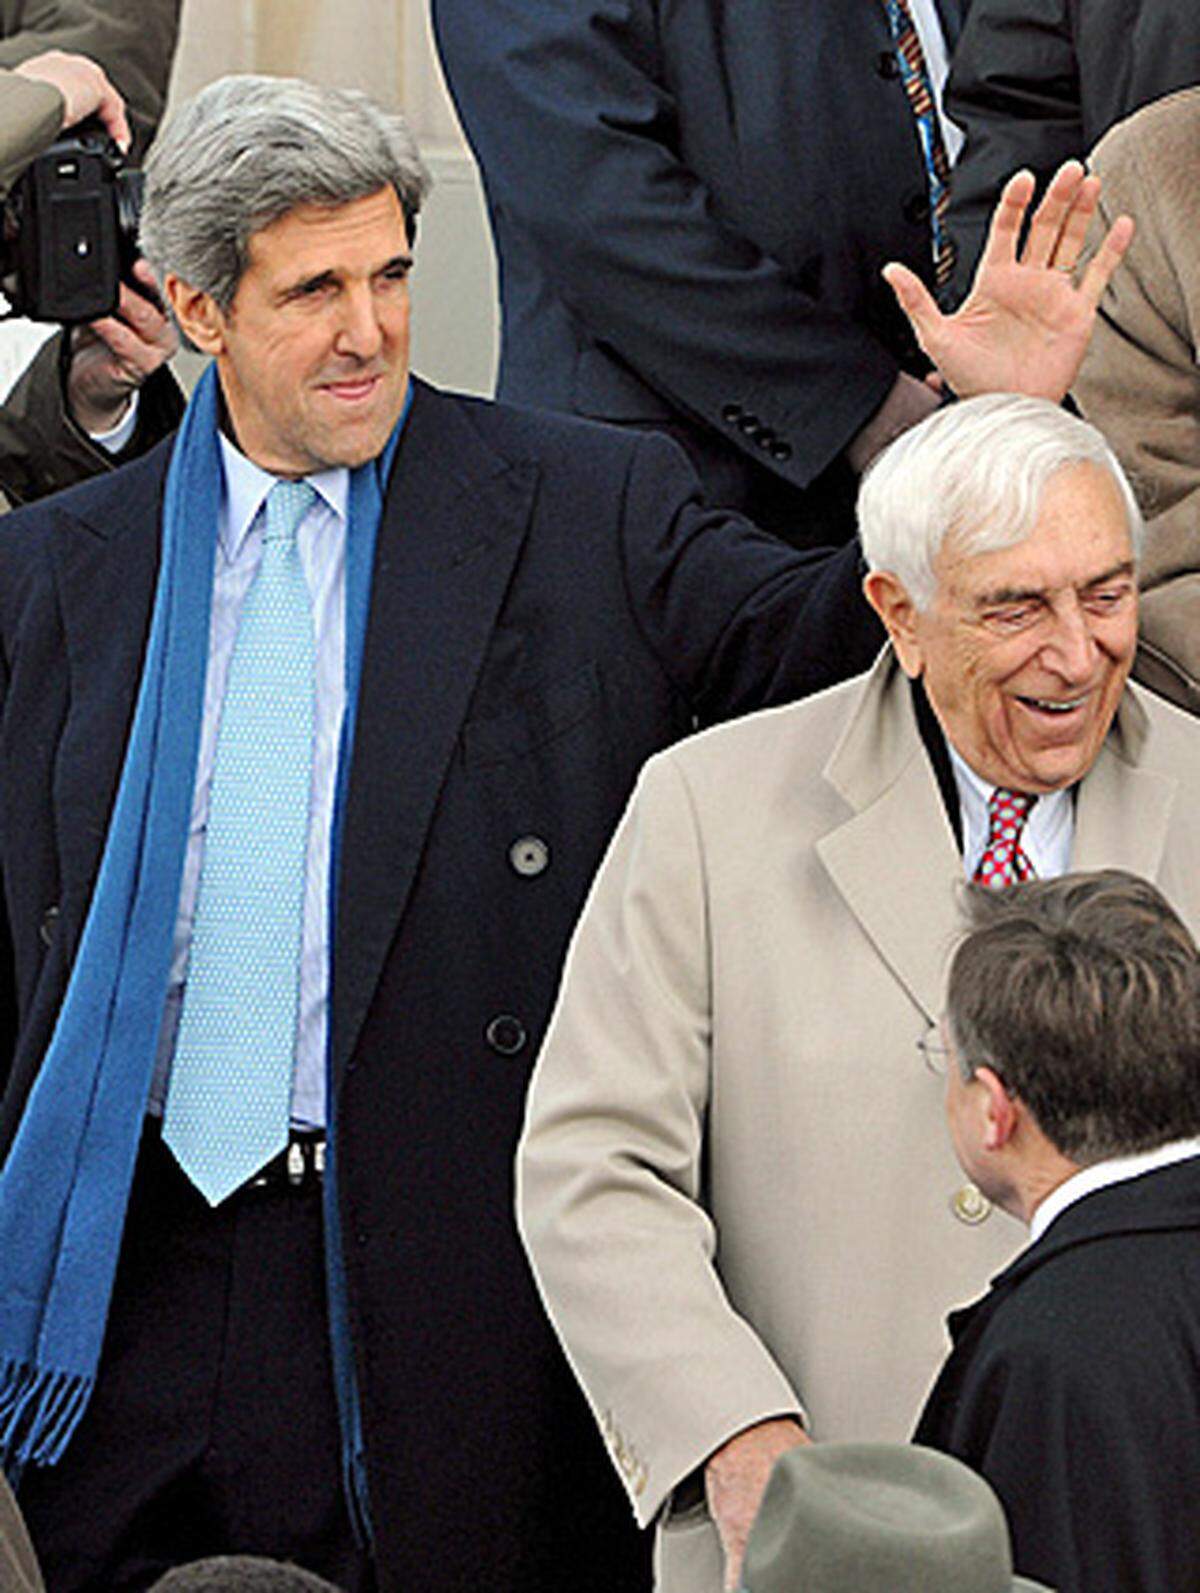 ... der ehemalige demokratische Präsidentschaftskandidat John Kerry, ..